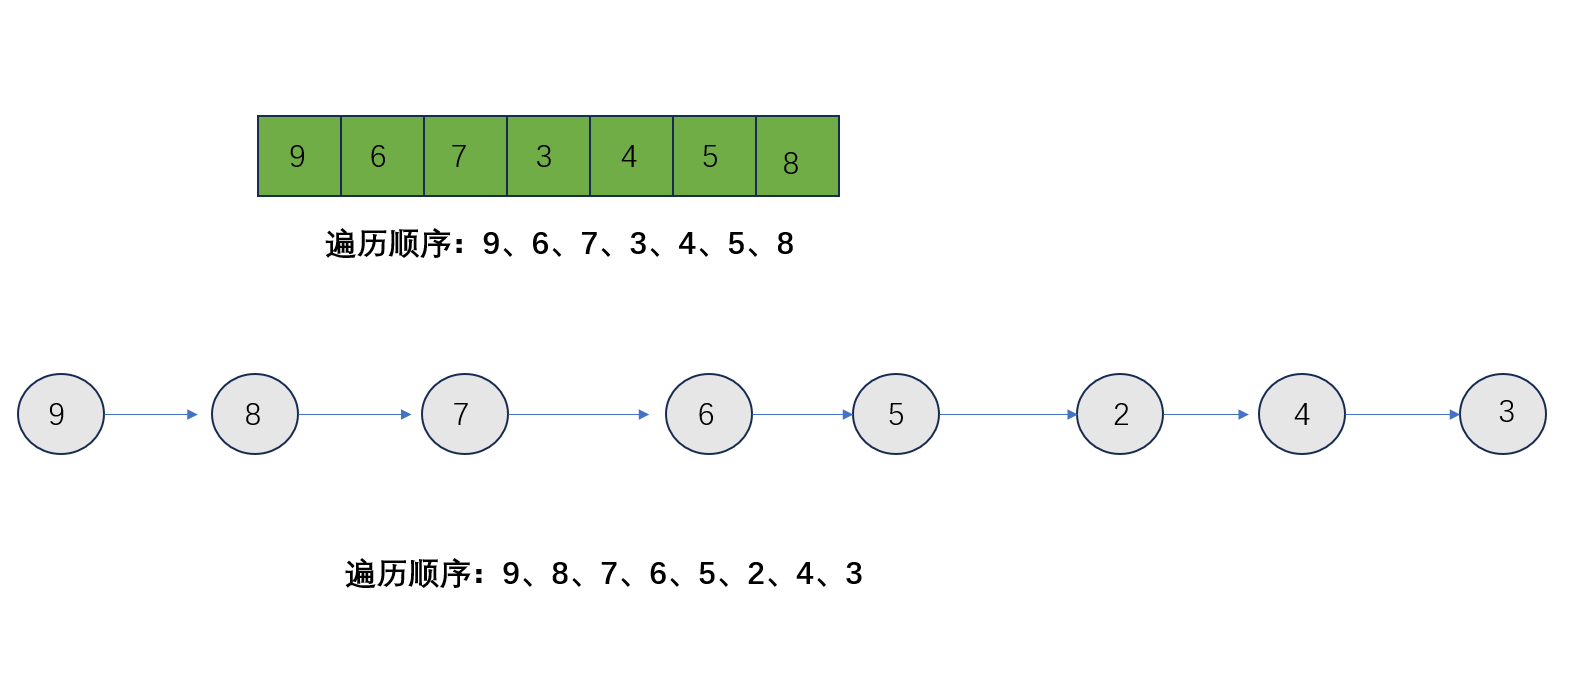                                             数据结构之二叉树的遍历1(Java)_中序遍历